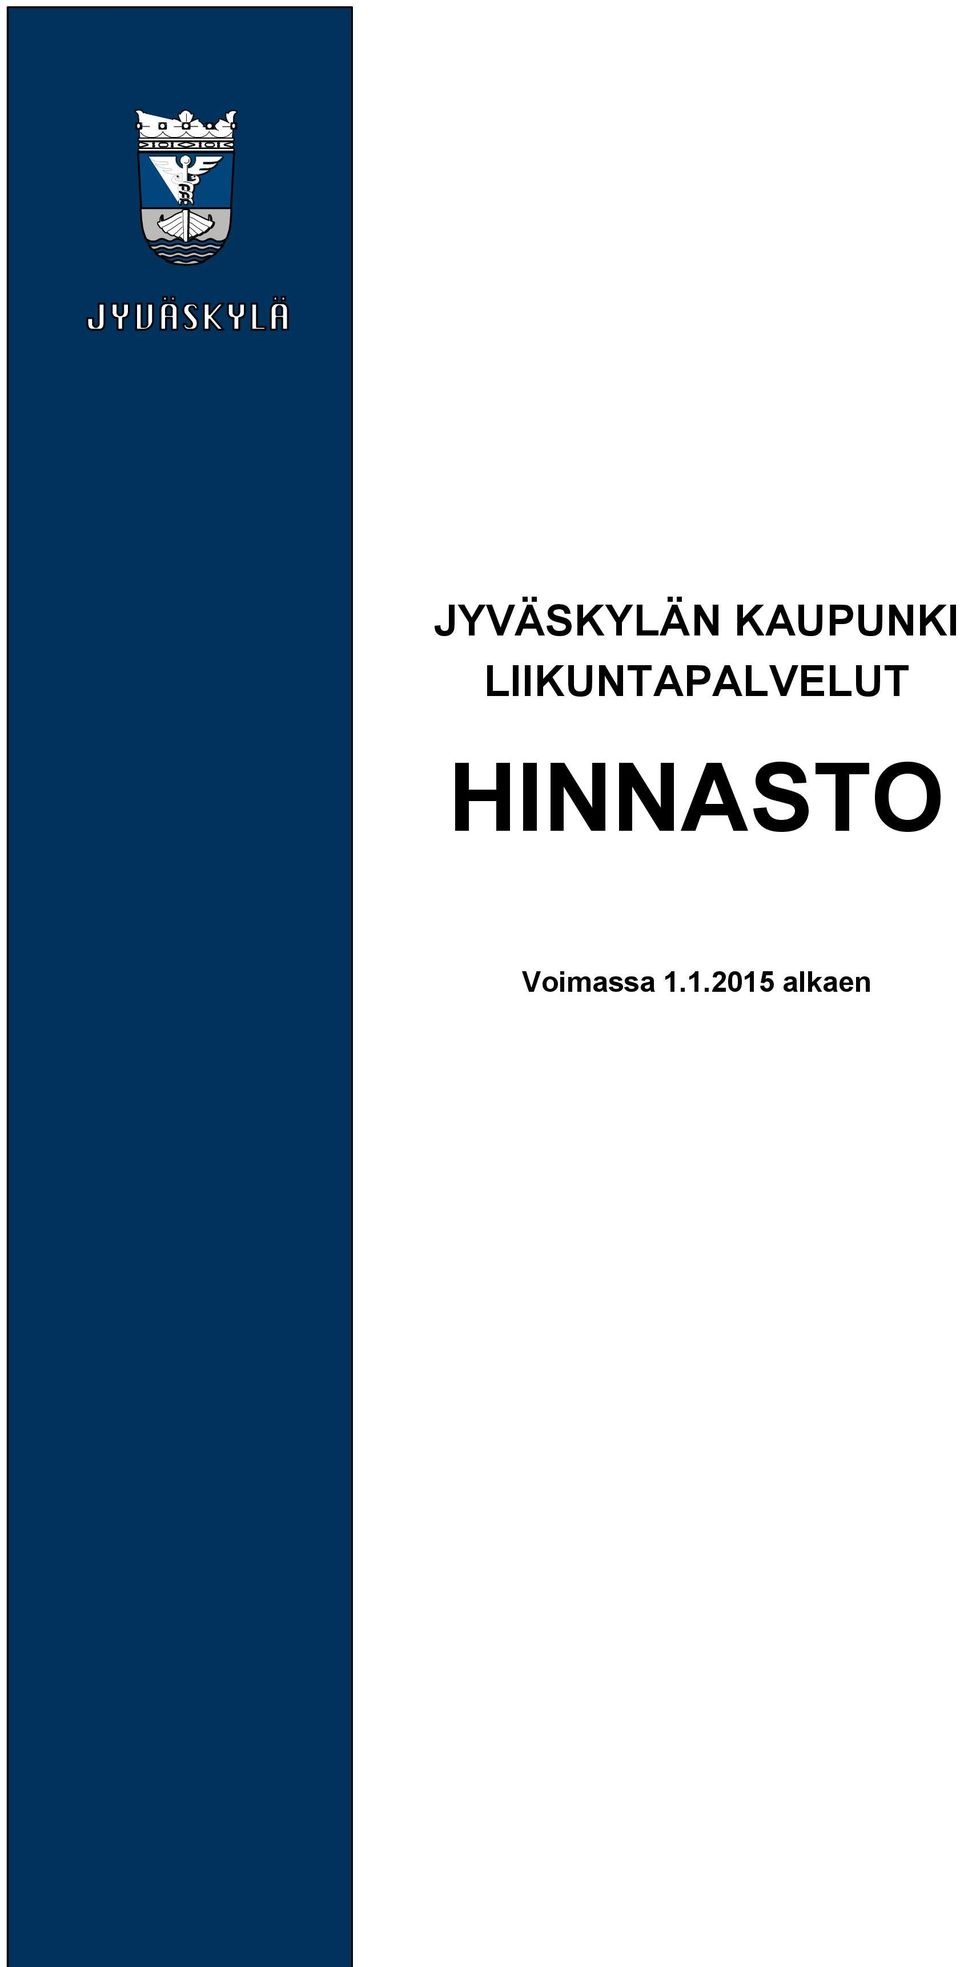 JYVÄSKYLÄN KAUPUNKI LIIKUNTAPALVELUT HINNASTO - PDF Ilmainen lataus